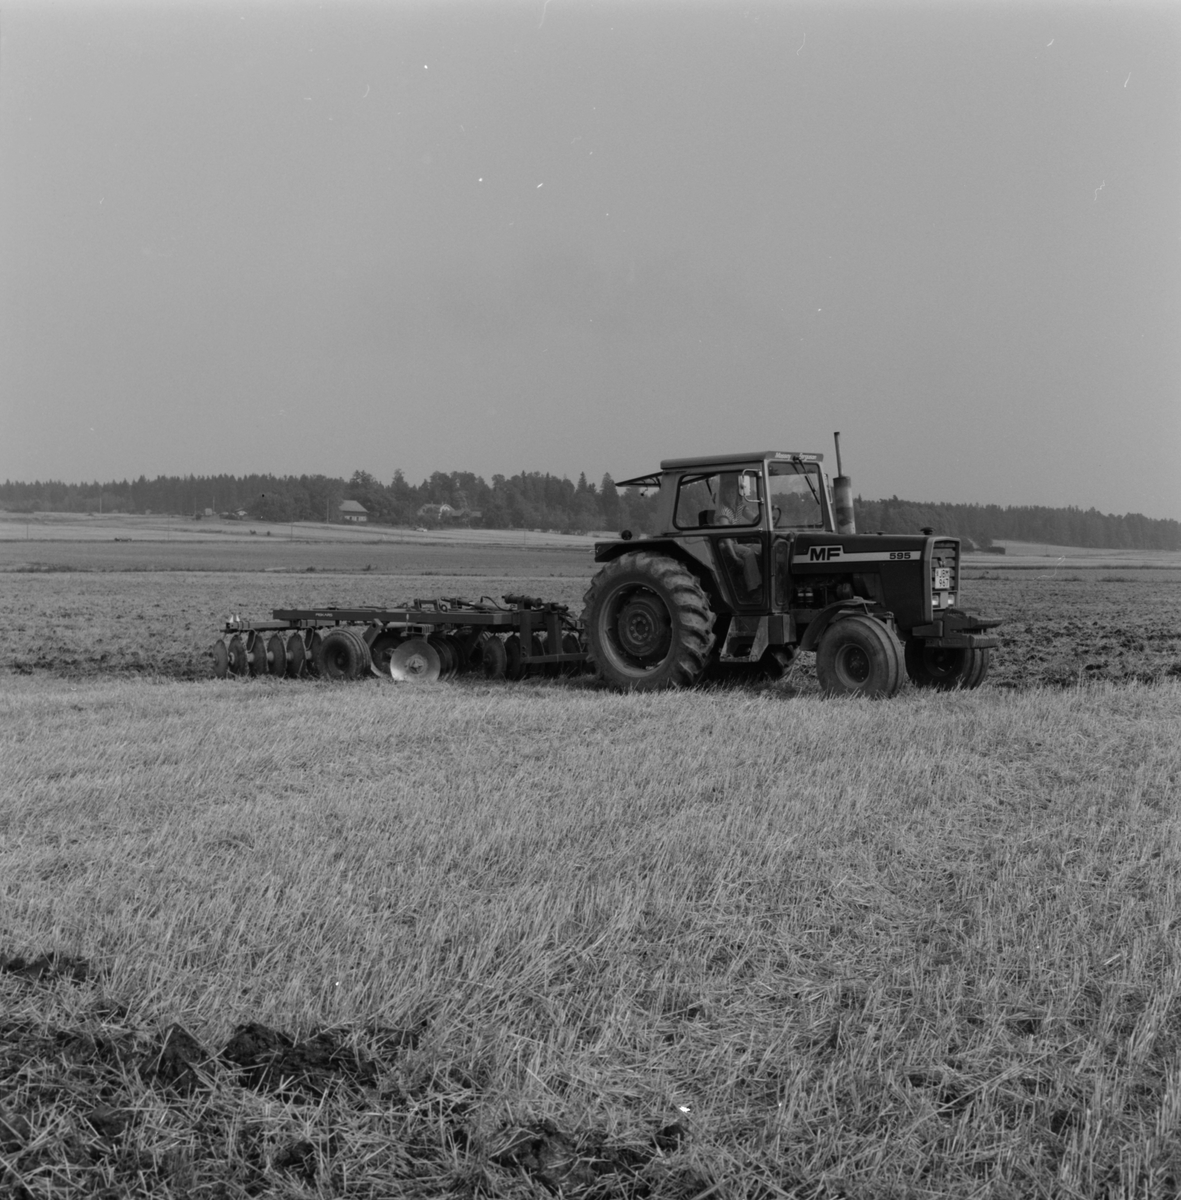 Jordbrukare Kerstin Leijon kör upp den nyskördade åkern med en tallriksharv, Stora Bärsta, Uppsala-Näs socken, Uppland september 1981